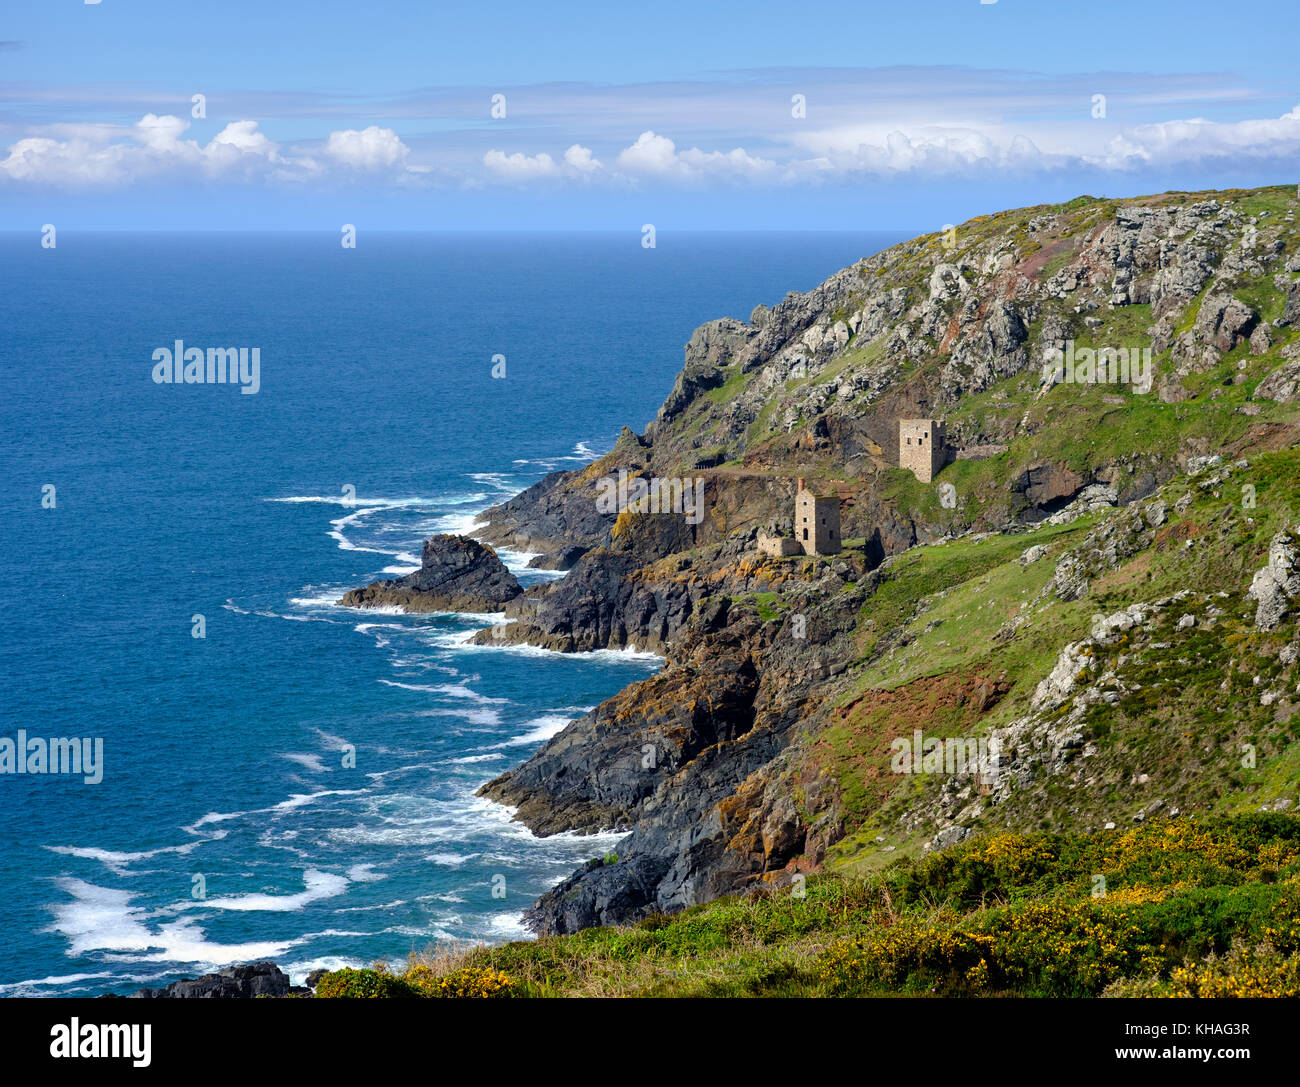 Felsige Küste mit Ruinen, Ehemalige Mine, alte Zinnmine, botanische Lack Mine, St Just in penwith, Cornwall, England, Großbritannien Stockfoto